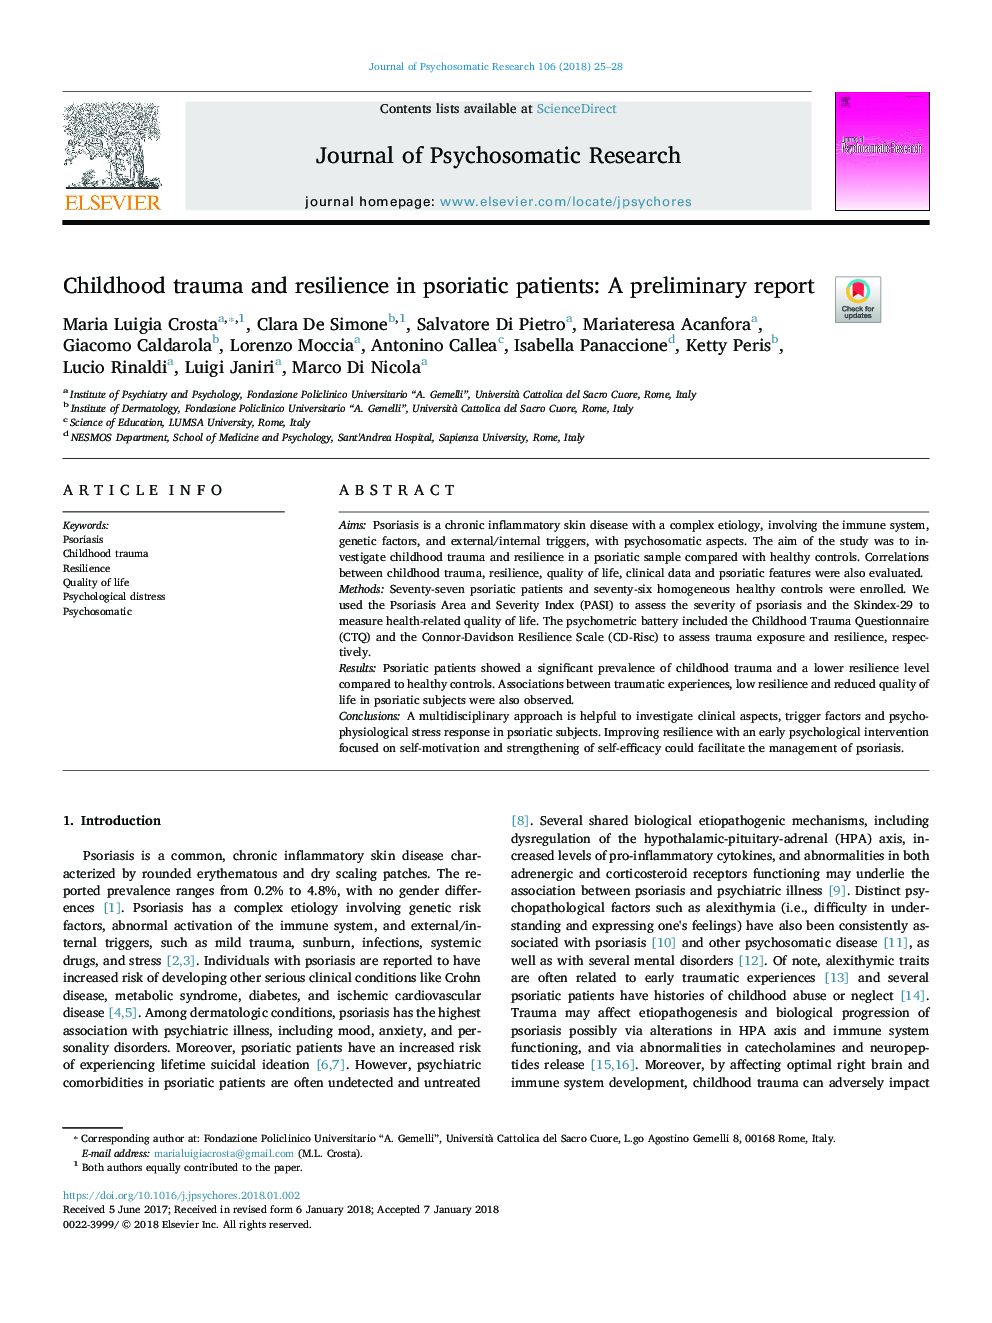 ترومای کودکان و انعطاف پذیری در بیماران مبتلا به پسوریازیس: یک گزارش اولیه 